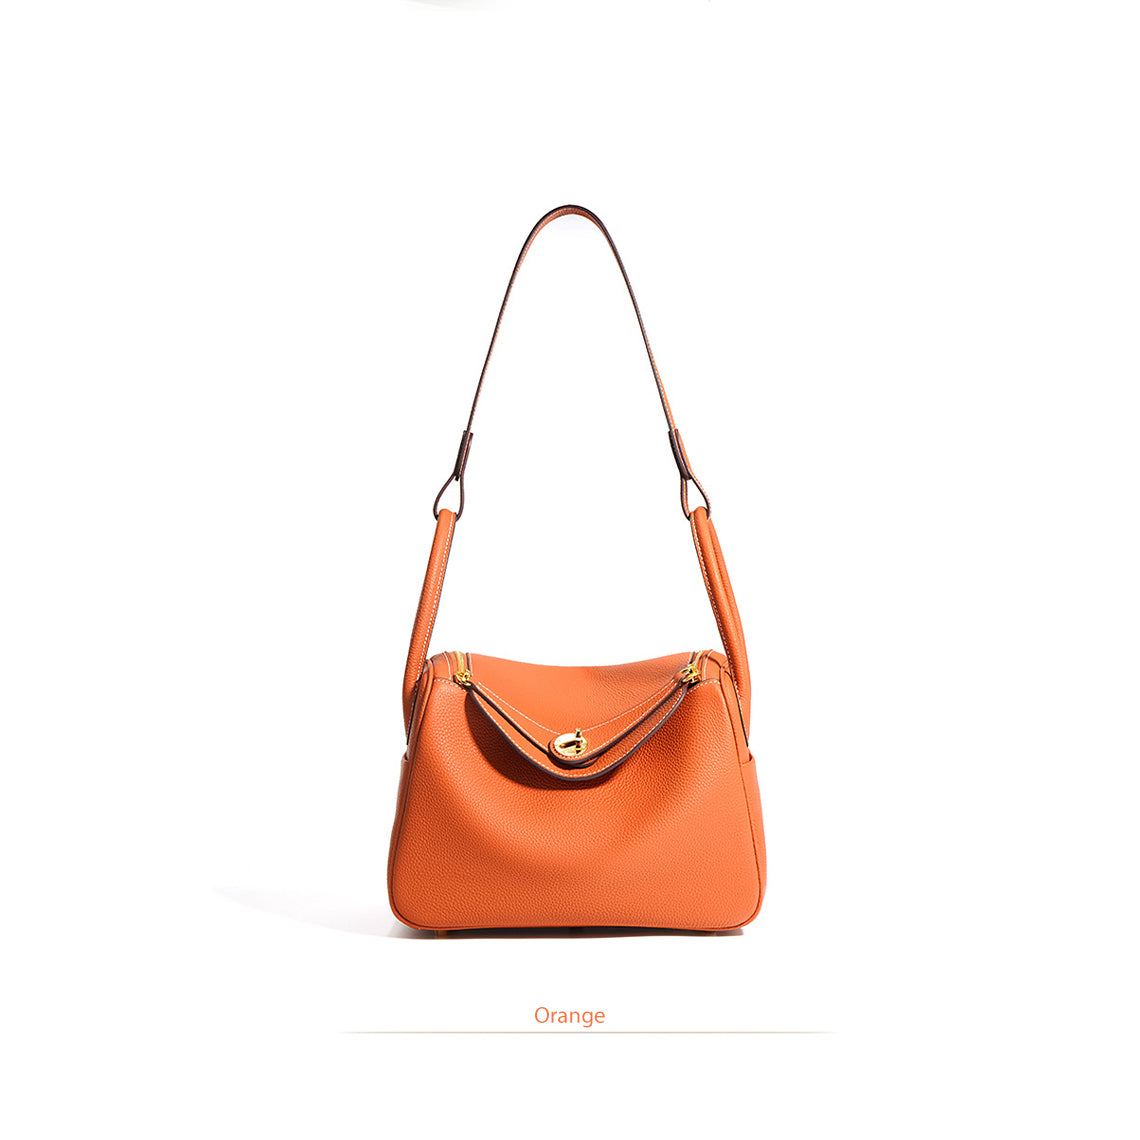 Orange Leather Handbag | Inspired Leather Lindy Handbag in Orange - POPSEWING™